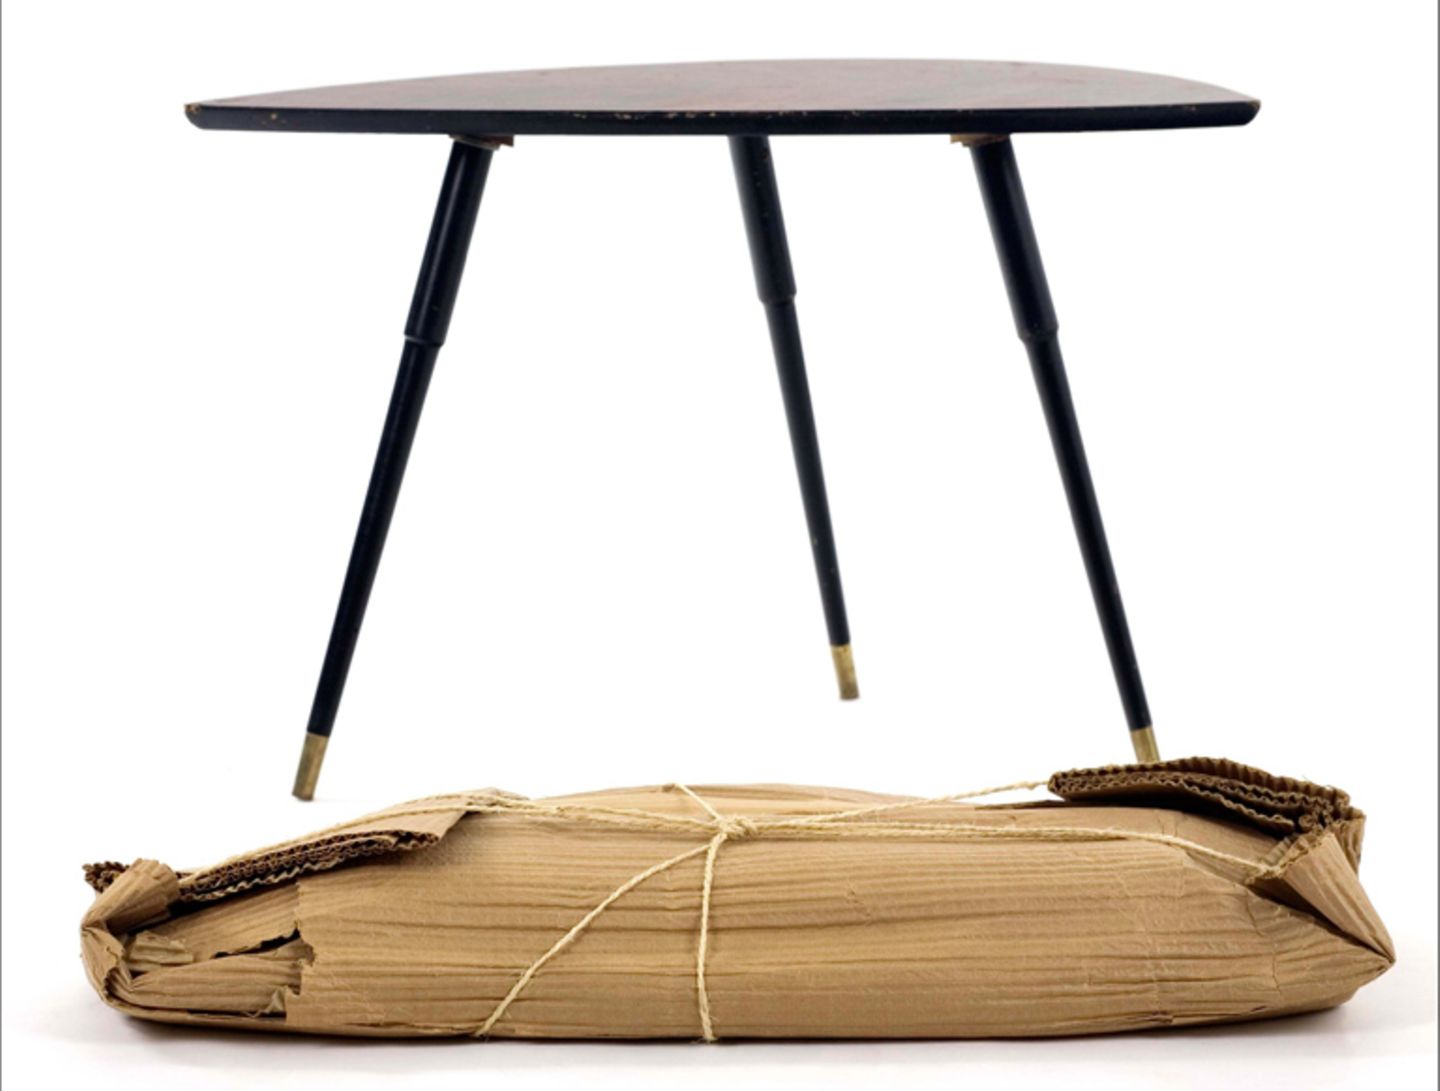 Tisch "Lövet" mit Verpackung, Werksentwurf von Ikea